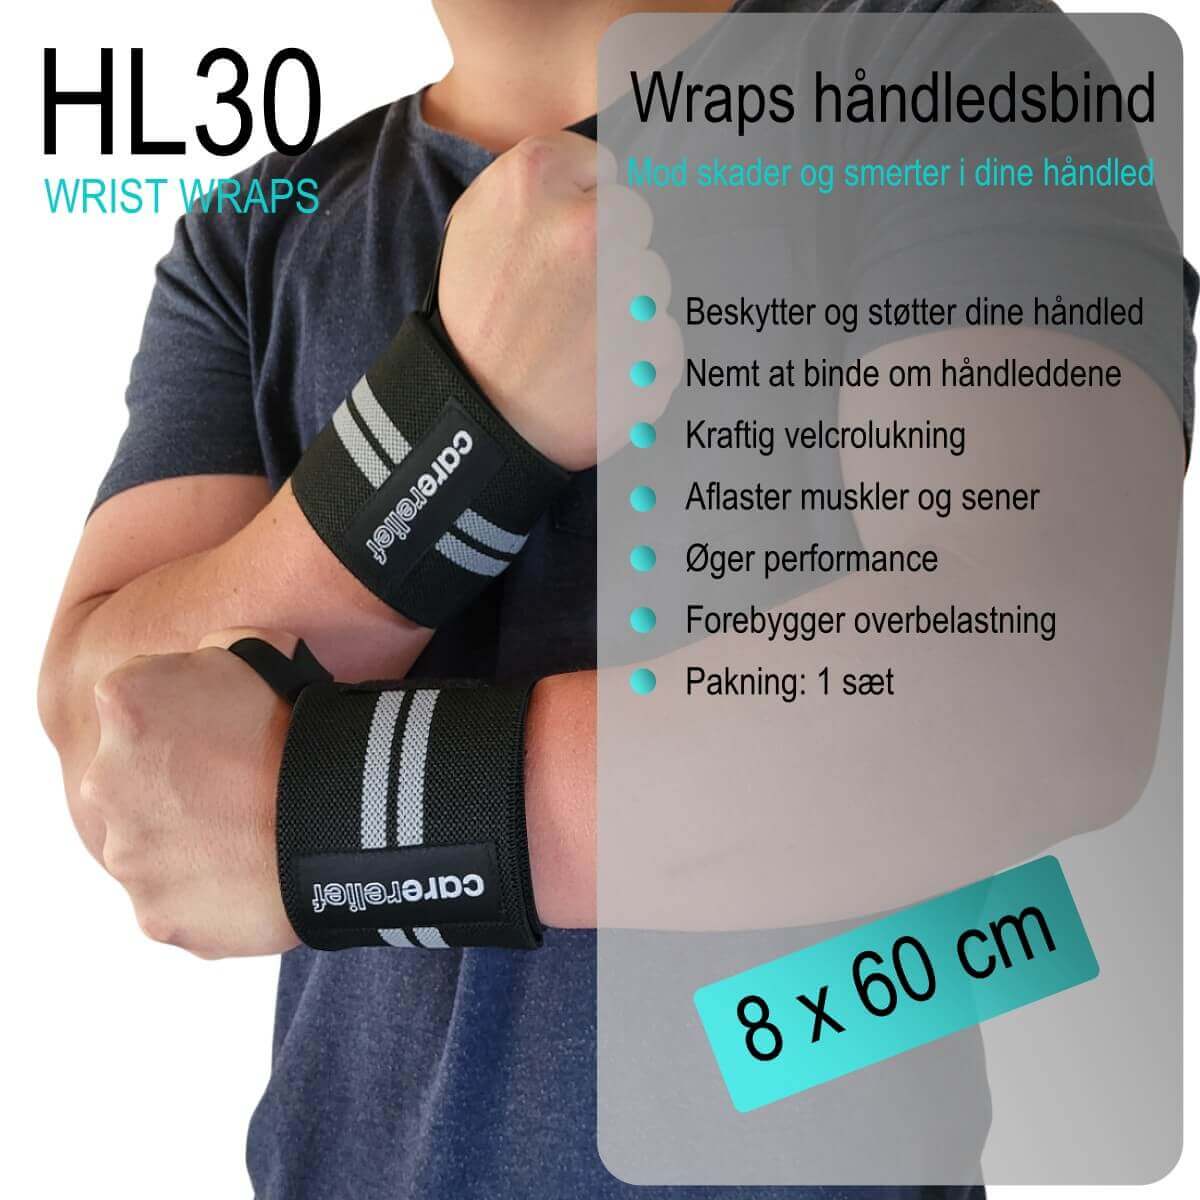 Wrist Wraps sæt HL30 hos Carerelief giver stabilitet og støtte til håndleddene ved træning og i hverdagen. Køb håndledsbind med håndledstøtte til sport (8 x 60 cm) hos Carerelief.dk.